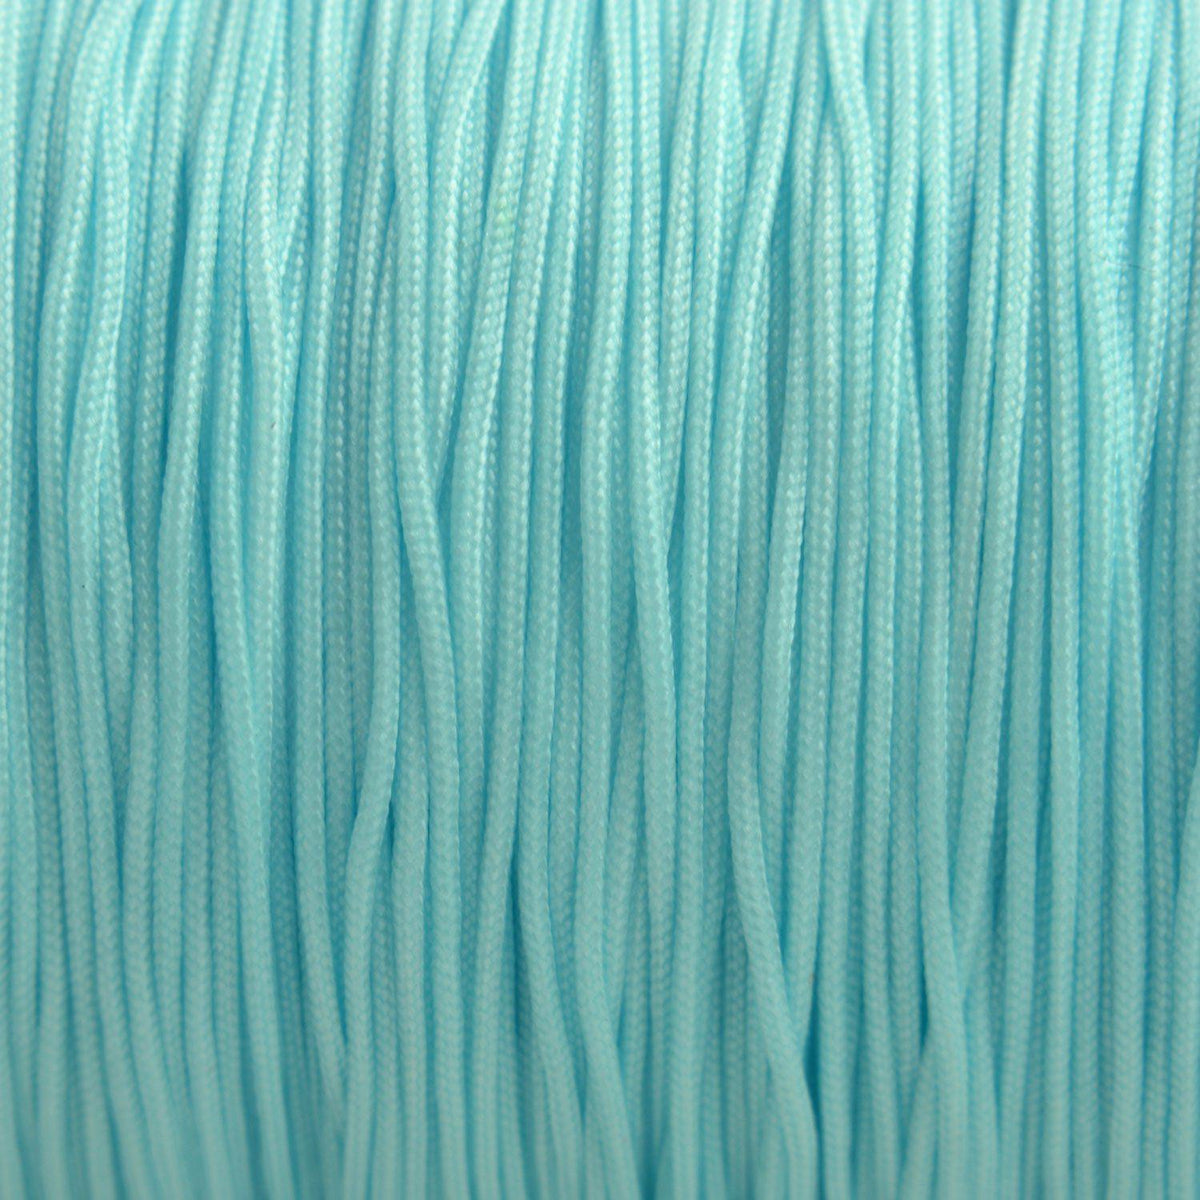 Rol nylon rattail koord licht aqua 0.8mm - 90 meter-Kraaltjes van Renate